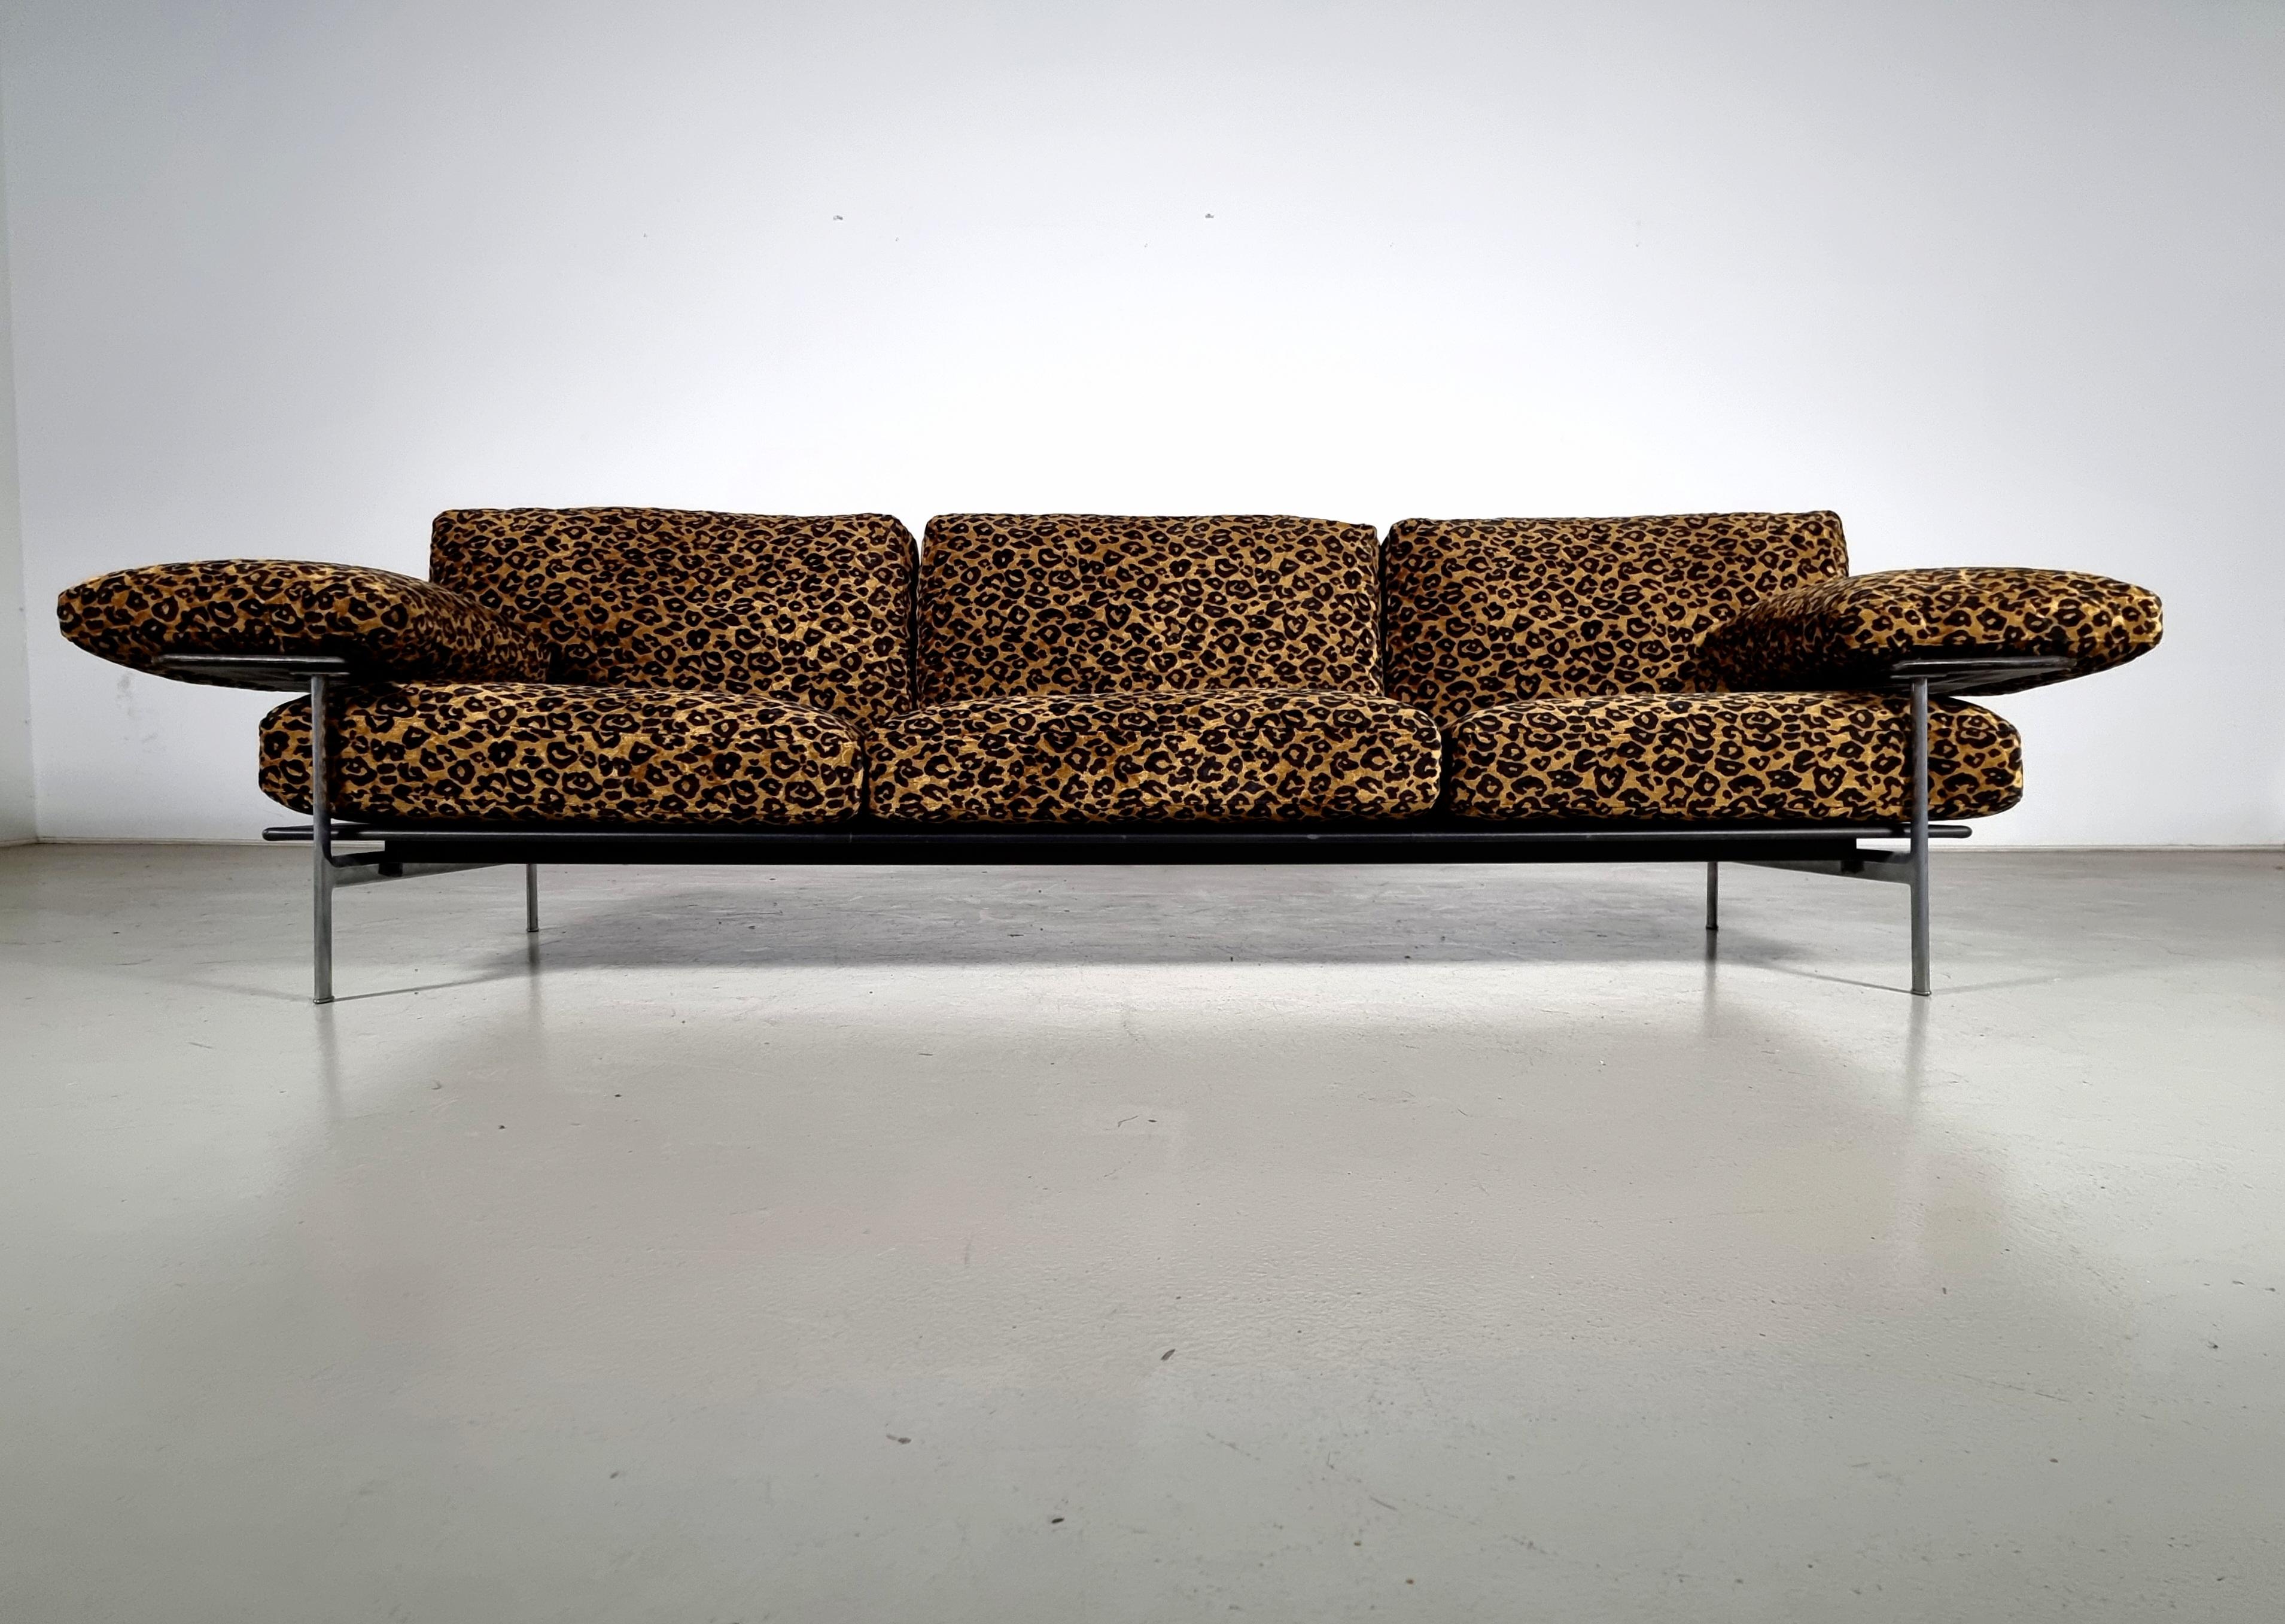 Diesis Sofa, entworfen von Antonio Citterio und Paolo Nava für B&B Italia.

Als Inbegriff innovativer Forschung und ausgefeilter Handwerkskunst ist es zu einem Meilenstein in der Geschichte des Designs geworden.
Dies ist die begehrte und seltene